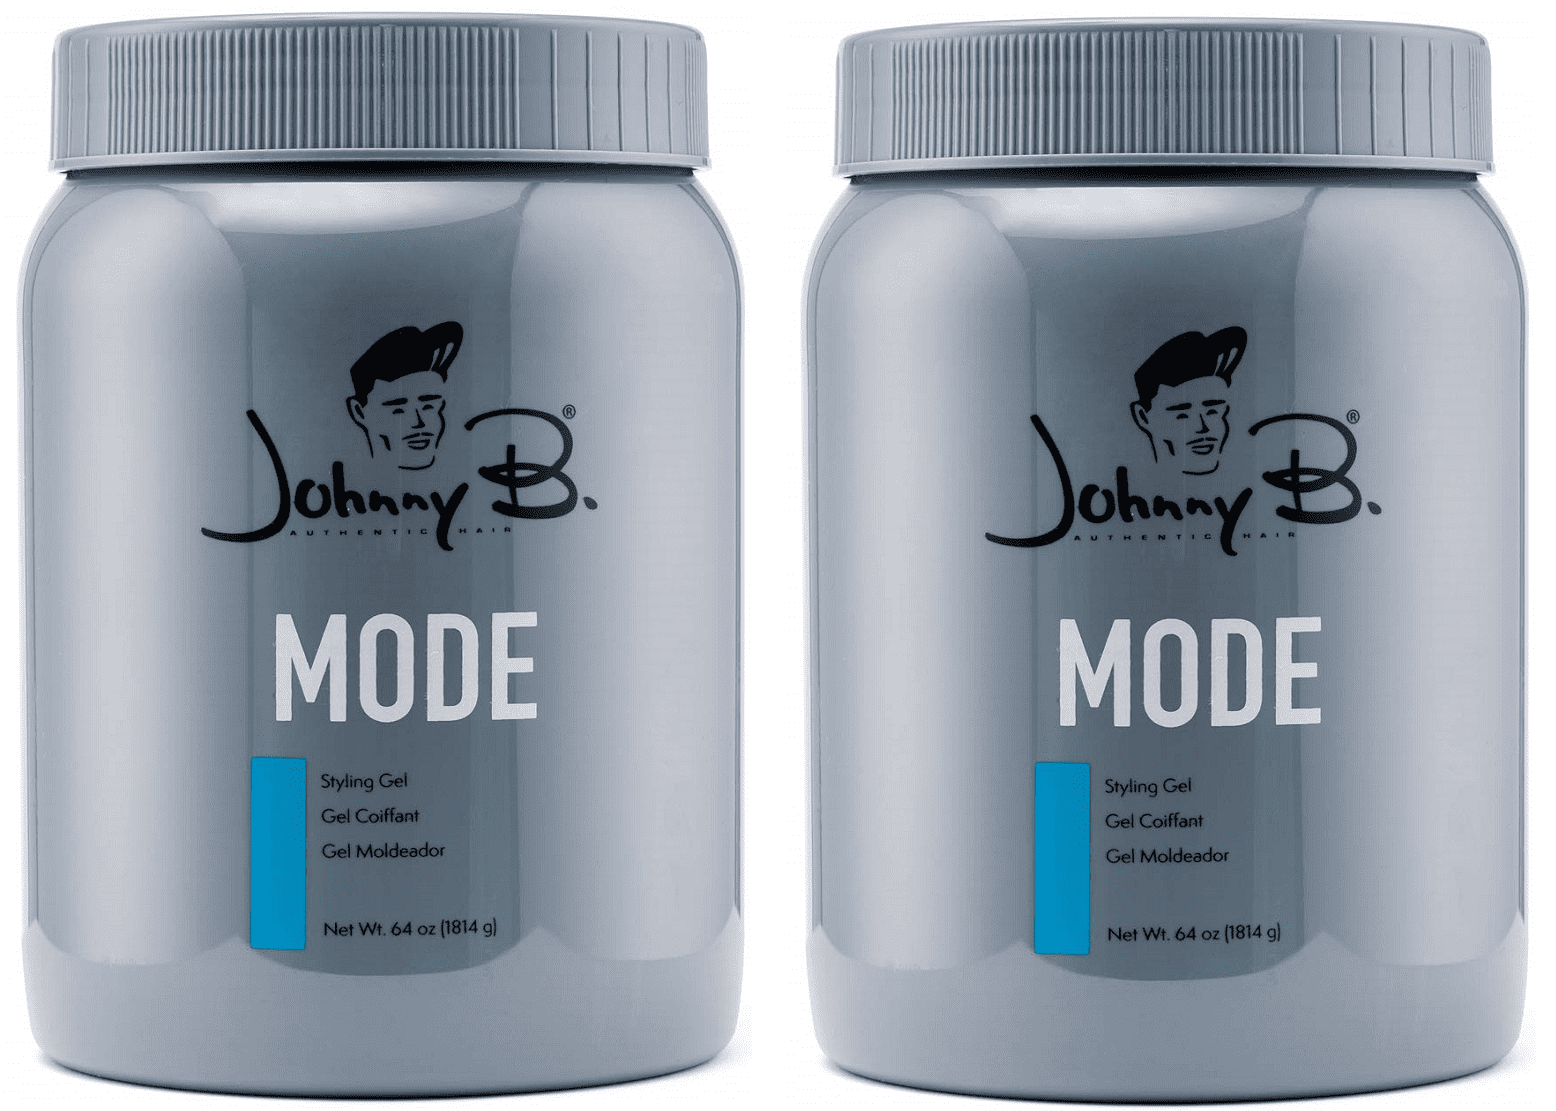 Johnny B Mode Styling Gel - wide 9